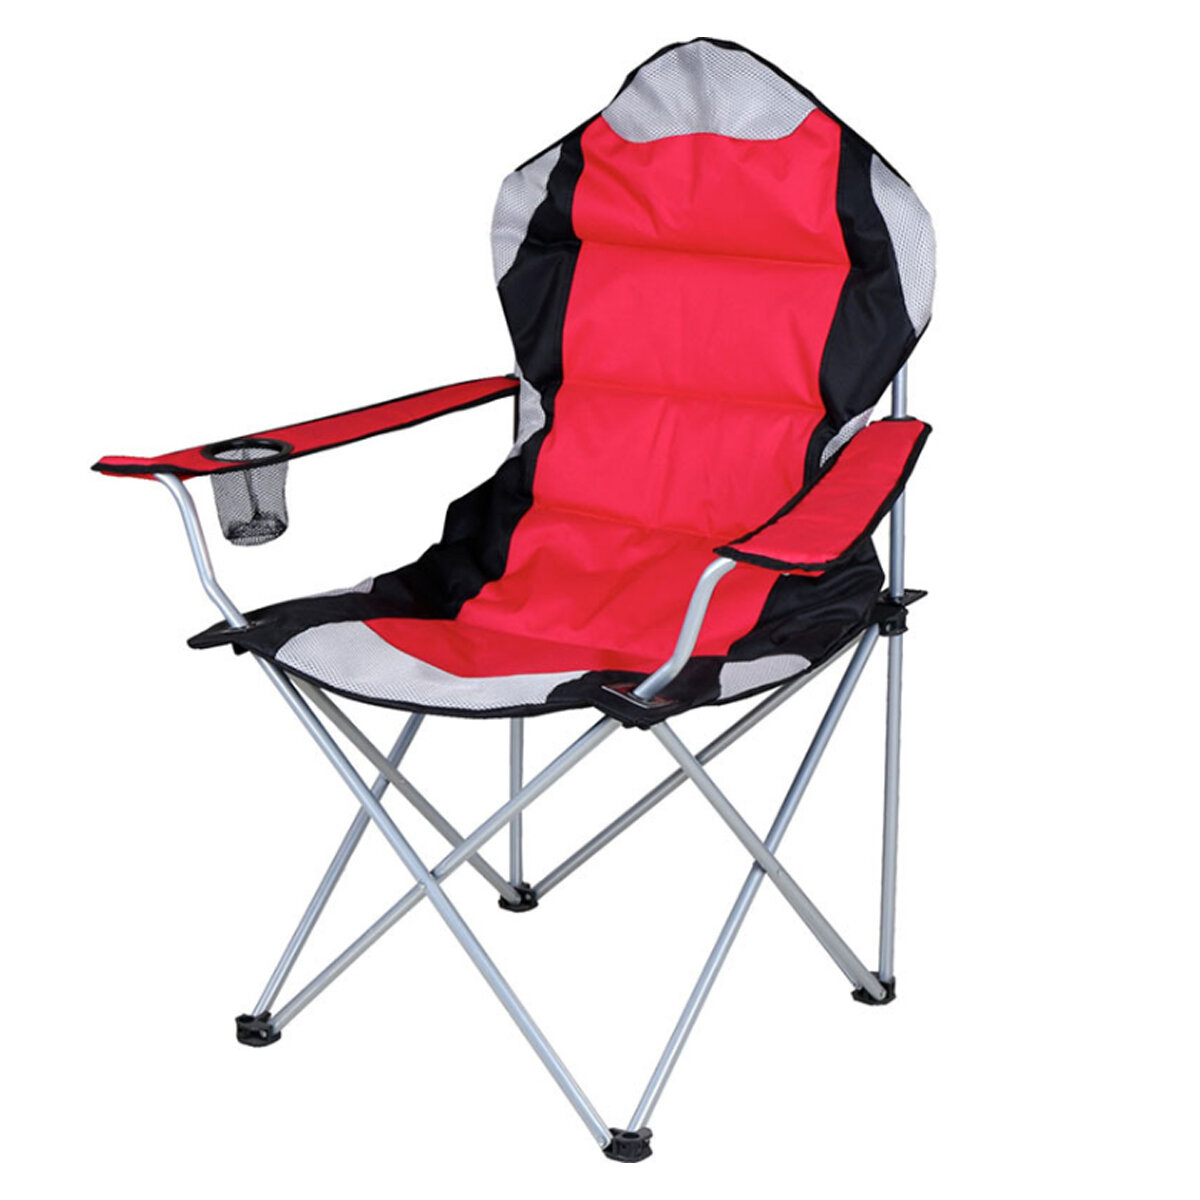 Chaise de camping pliante de 60x60x100 cm, robuste et portable, pour la pêche et la plage ultralégère avec porte-gobelet.